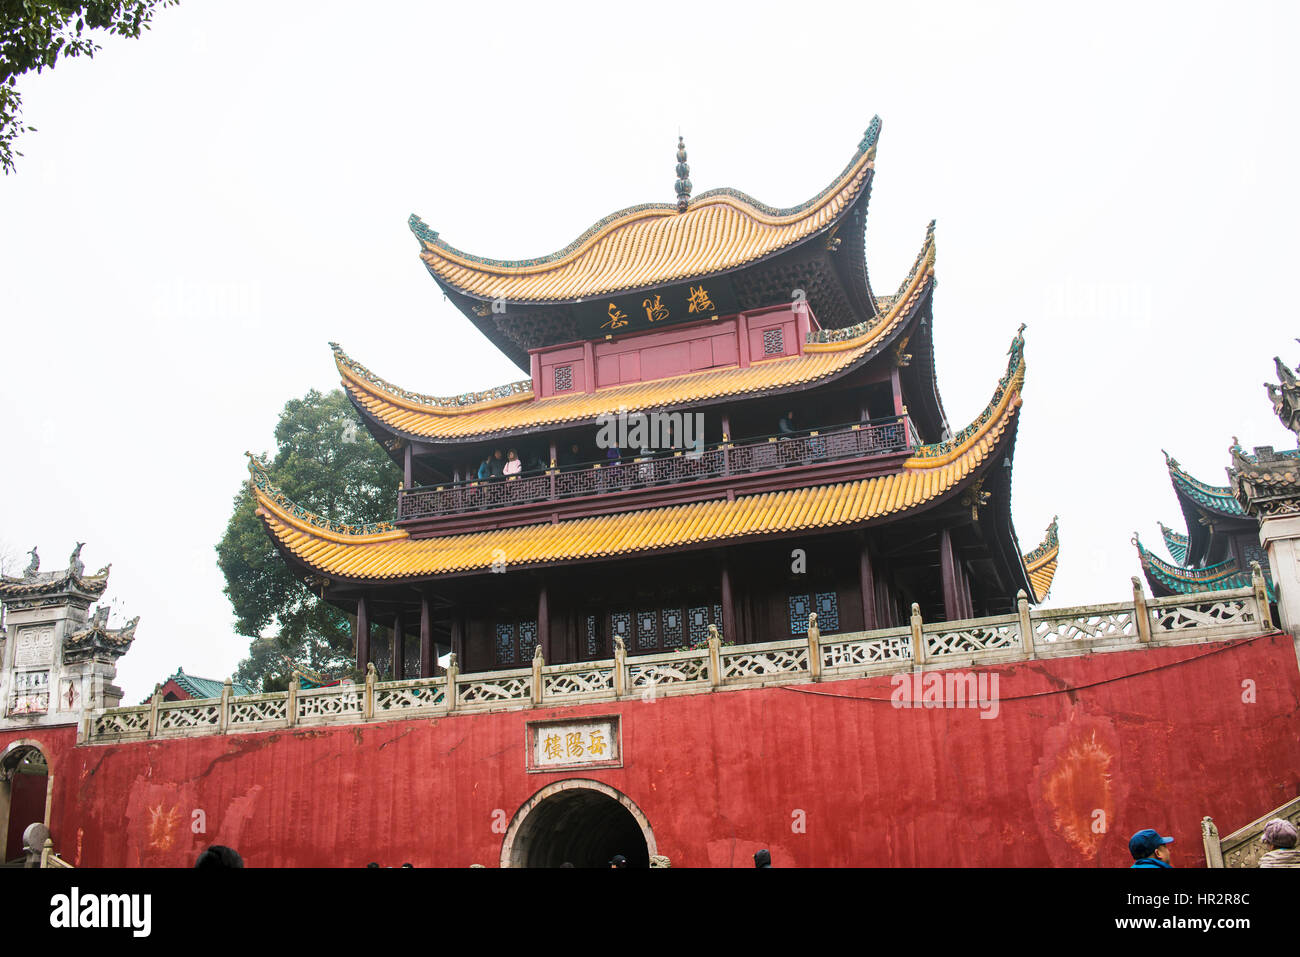 Yueyang tower scenic spot,Yueyang city of Hunan province in China. Stock Photo